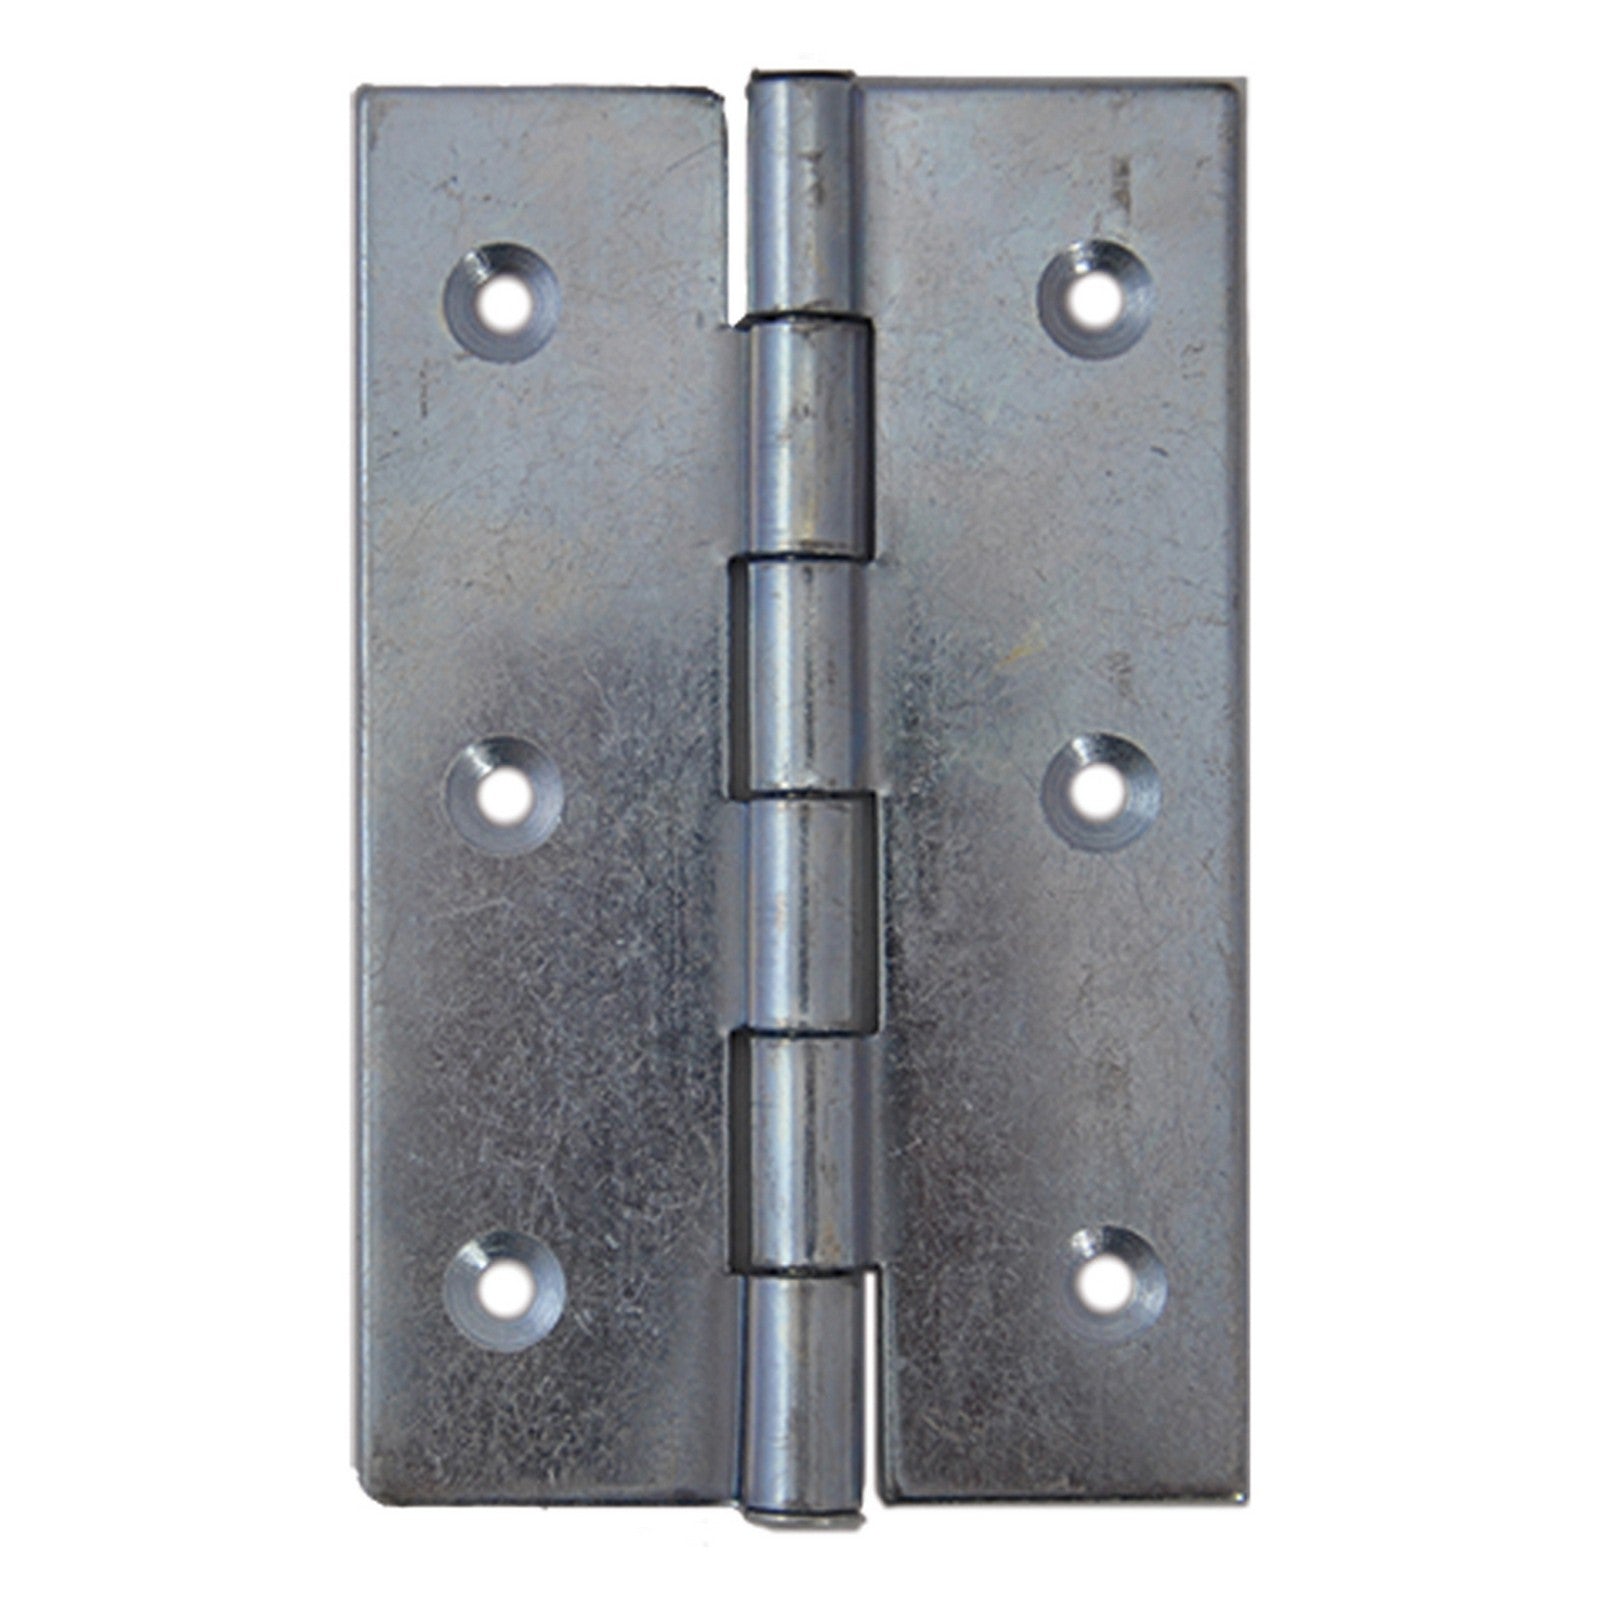 1blister cerniera acciaio zincato art.840 mm 50 x 40 - 4 pezzi cod:ferx.38230nlm